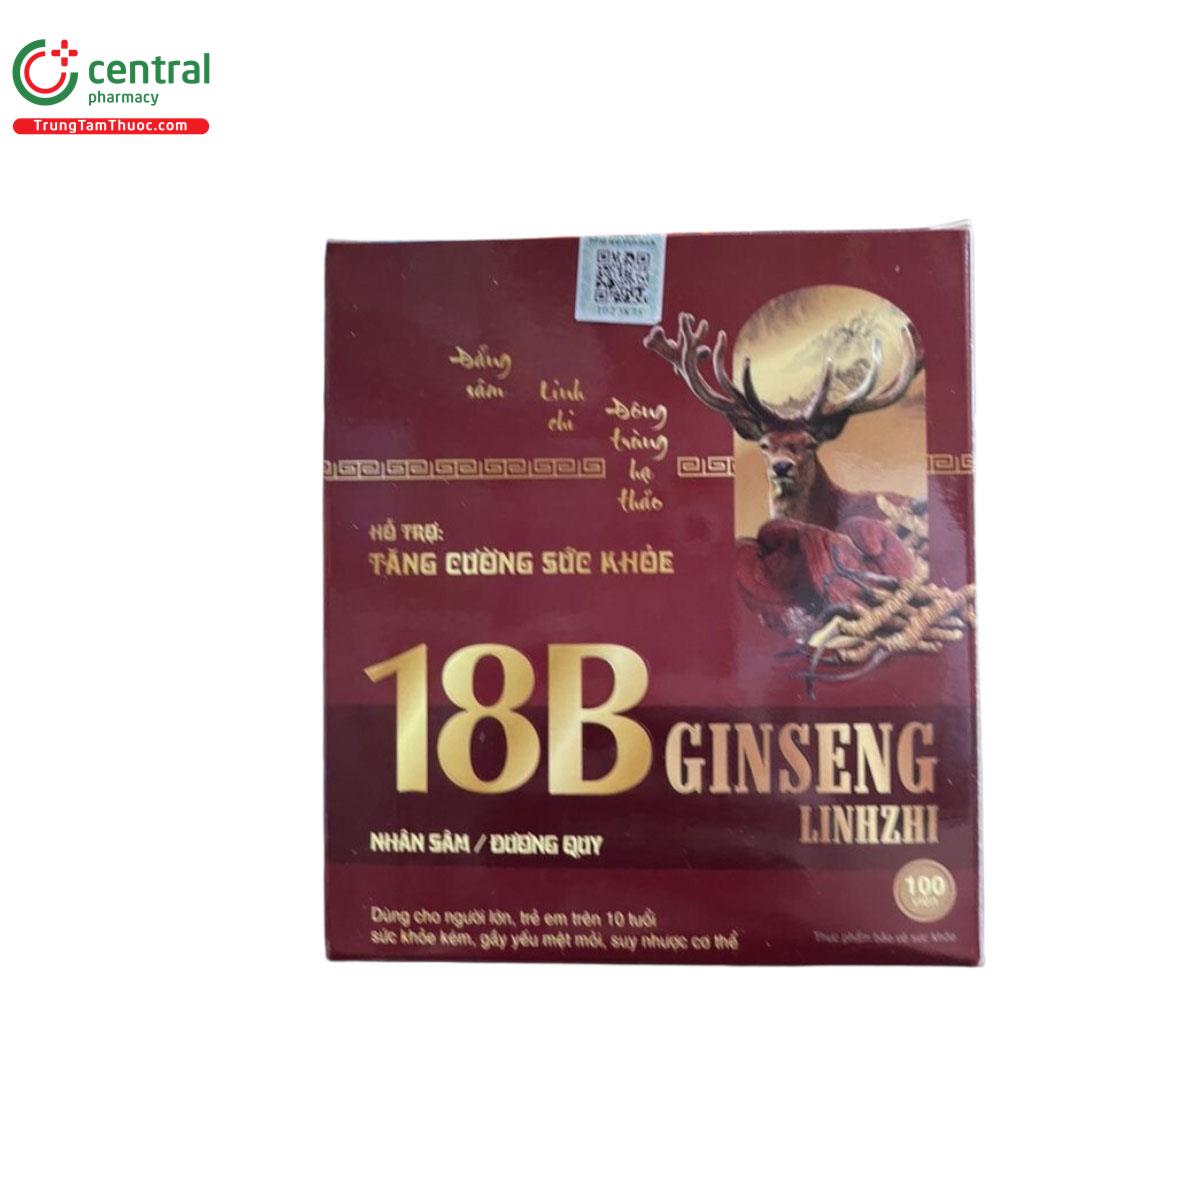 18B Ginseng Linhzhi Vinaphar